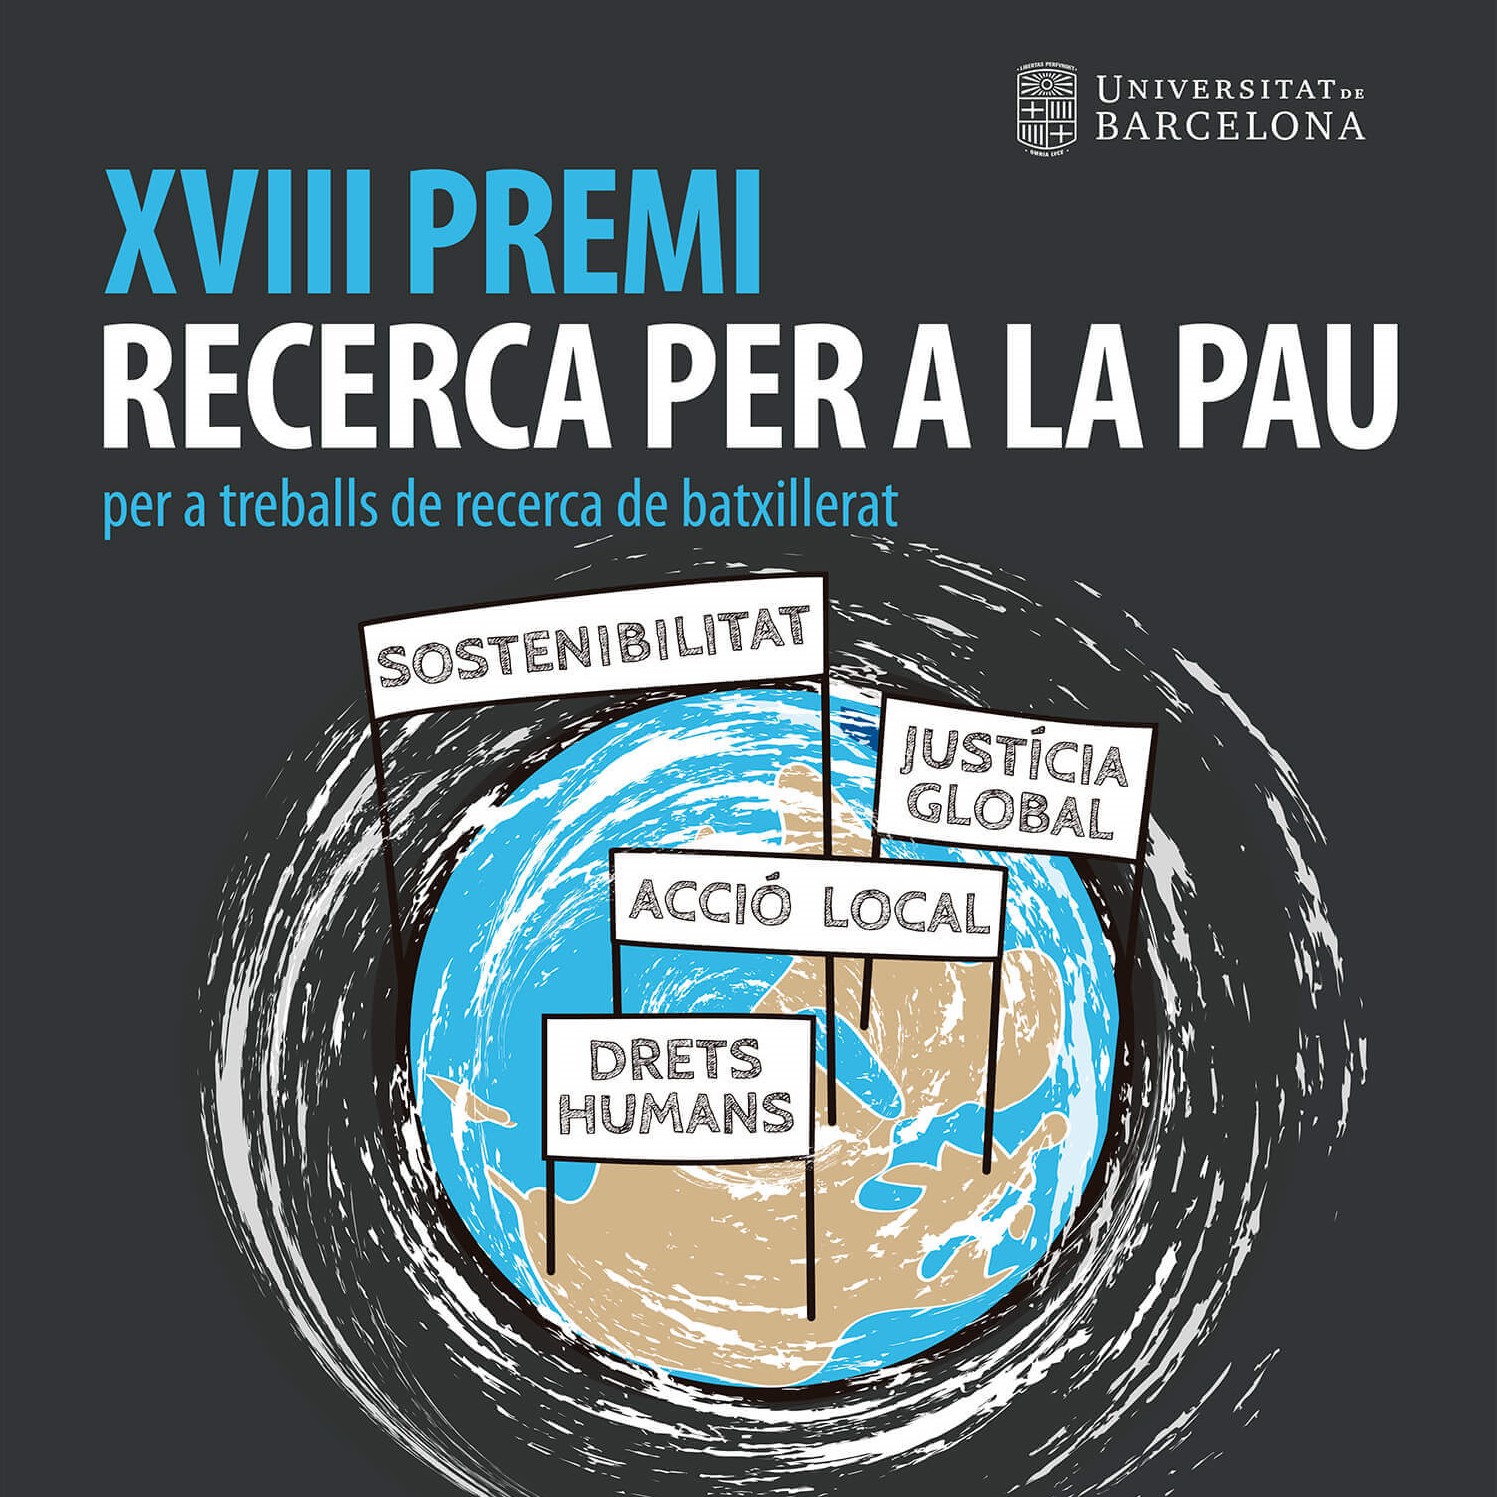 Lliurament del XVIII Premi de Recerca per a la Pau per a treballs de batxillerat